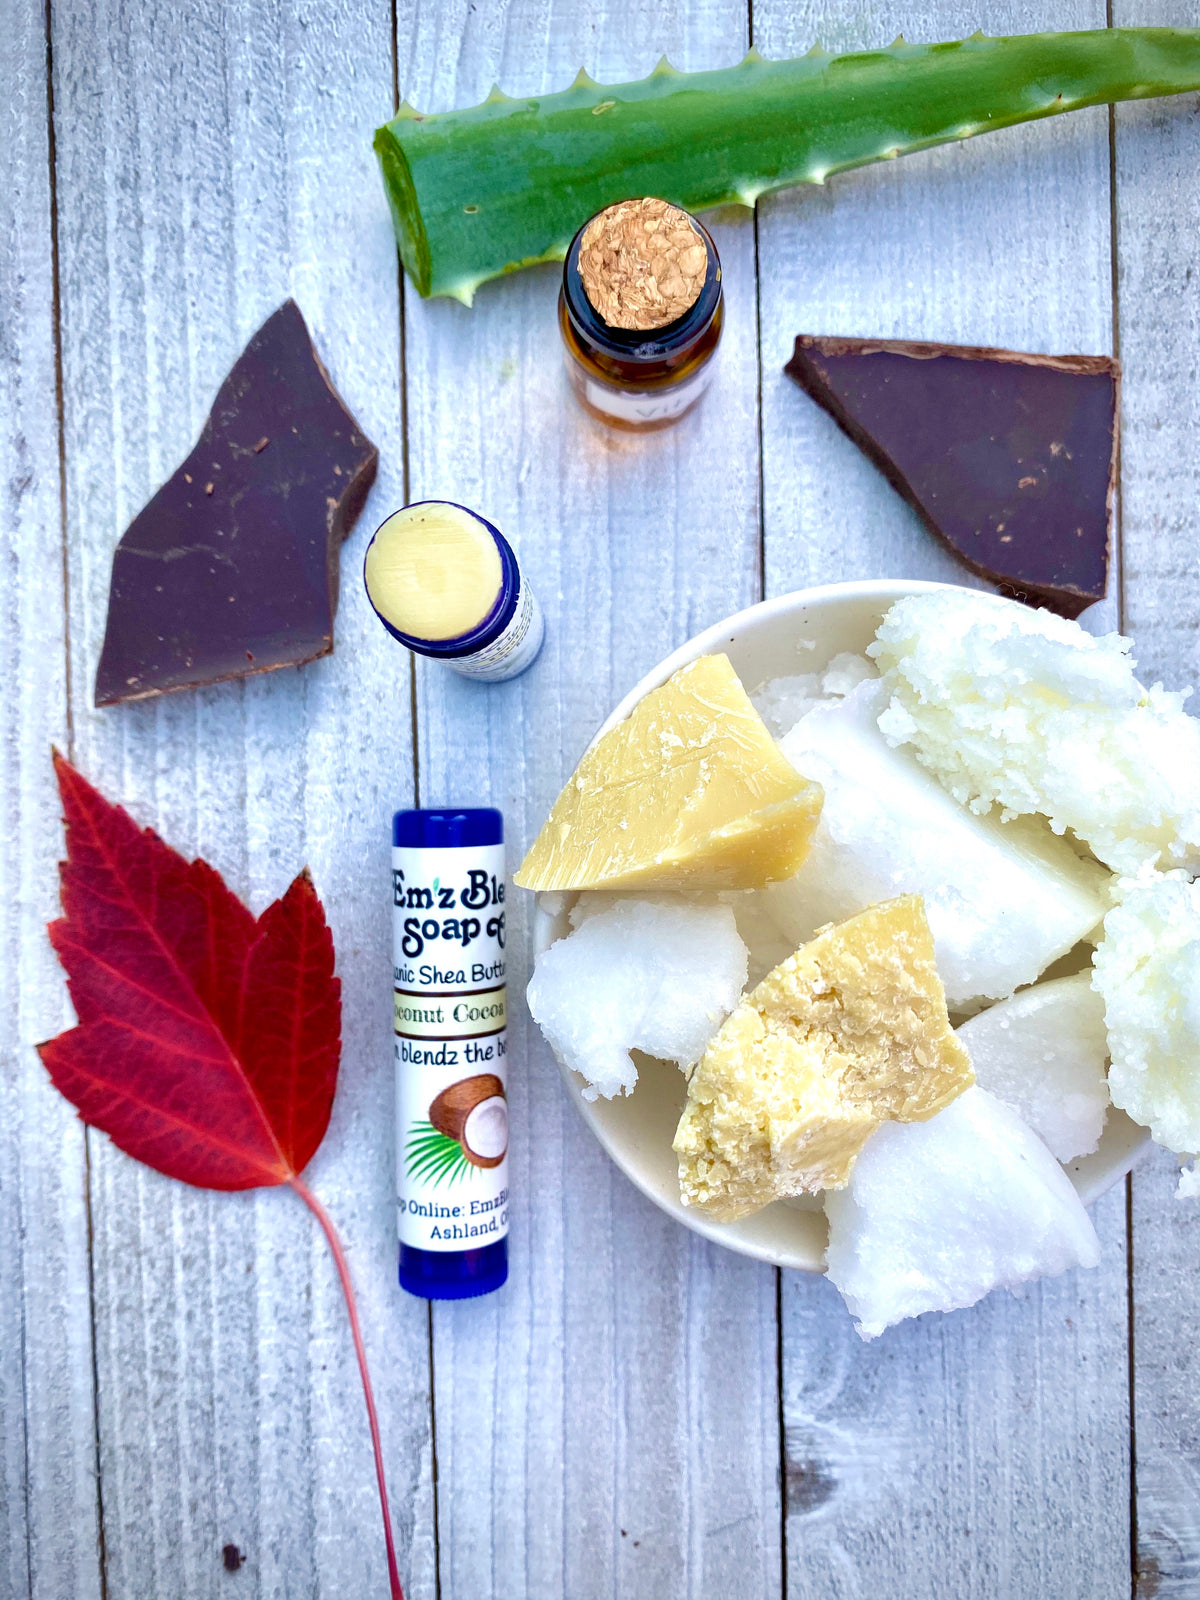 Organic Naturally Handcrafted Shea Butter Lip Balm | Coconut Cocoa Butter - Emz Blendz